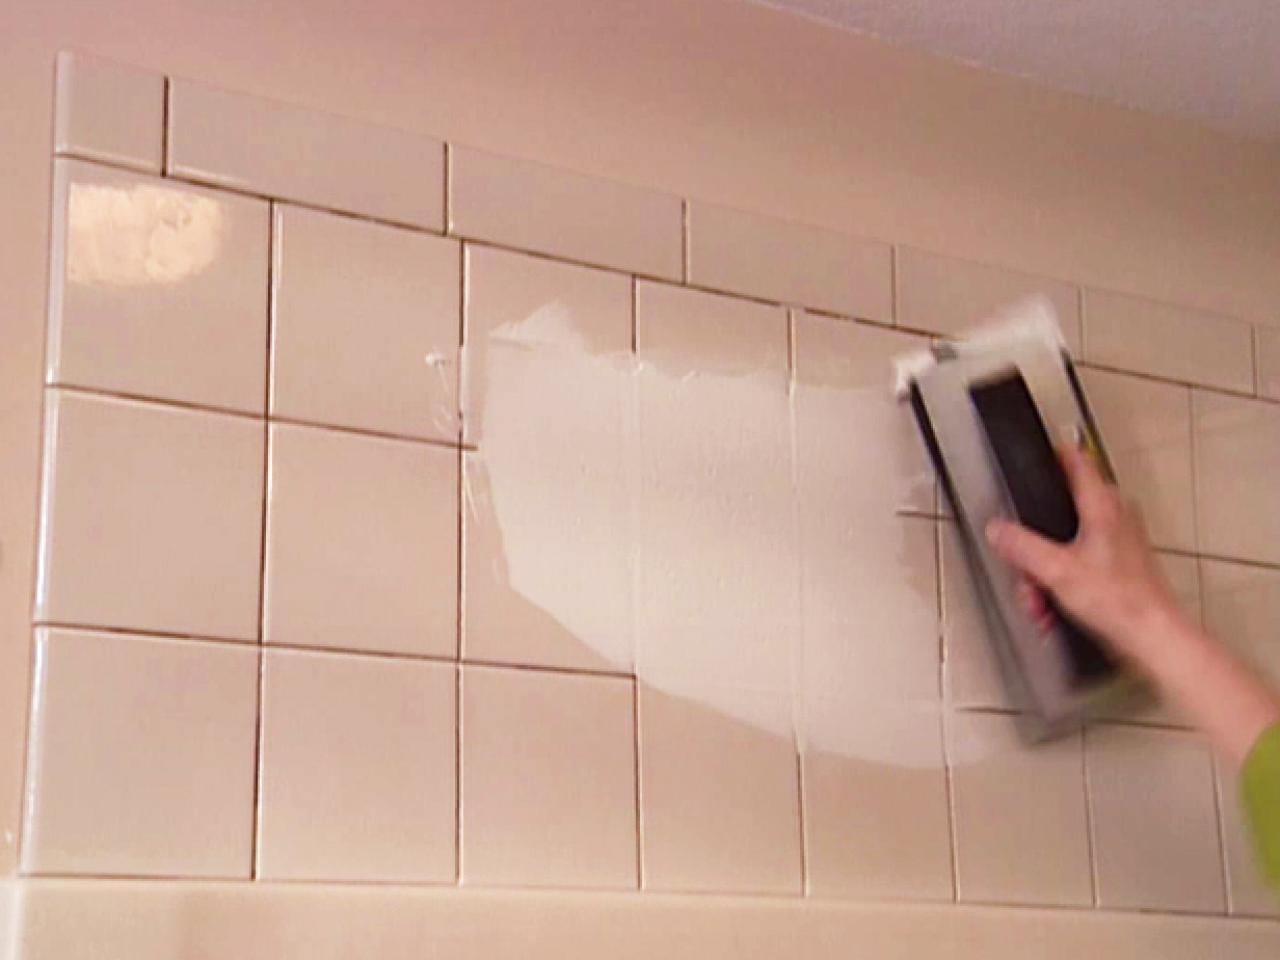 Tile Backsplash For The Shower, Tile Above Bathtub Surround